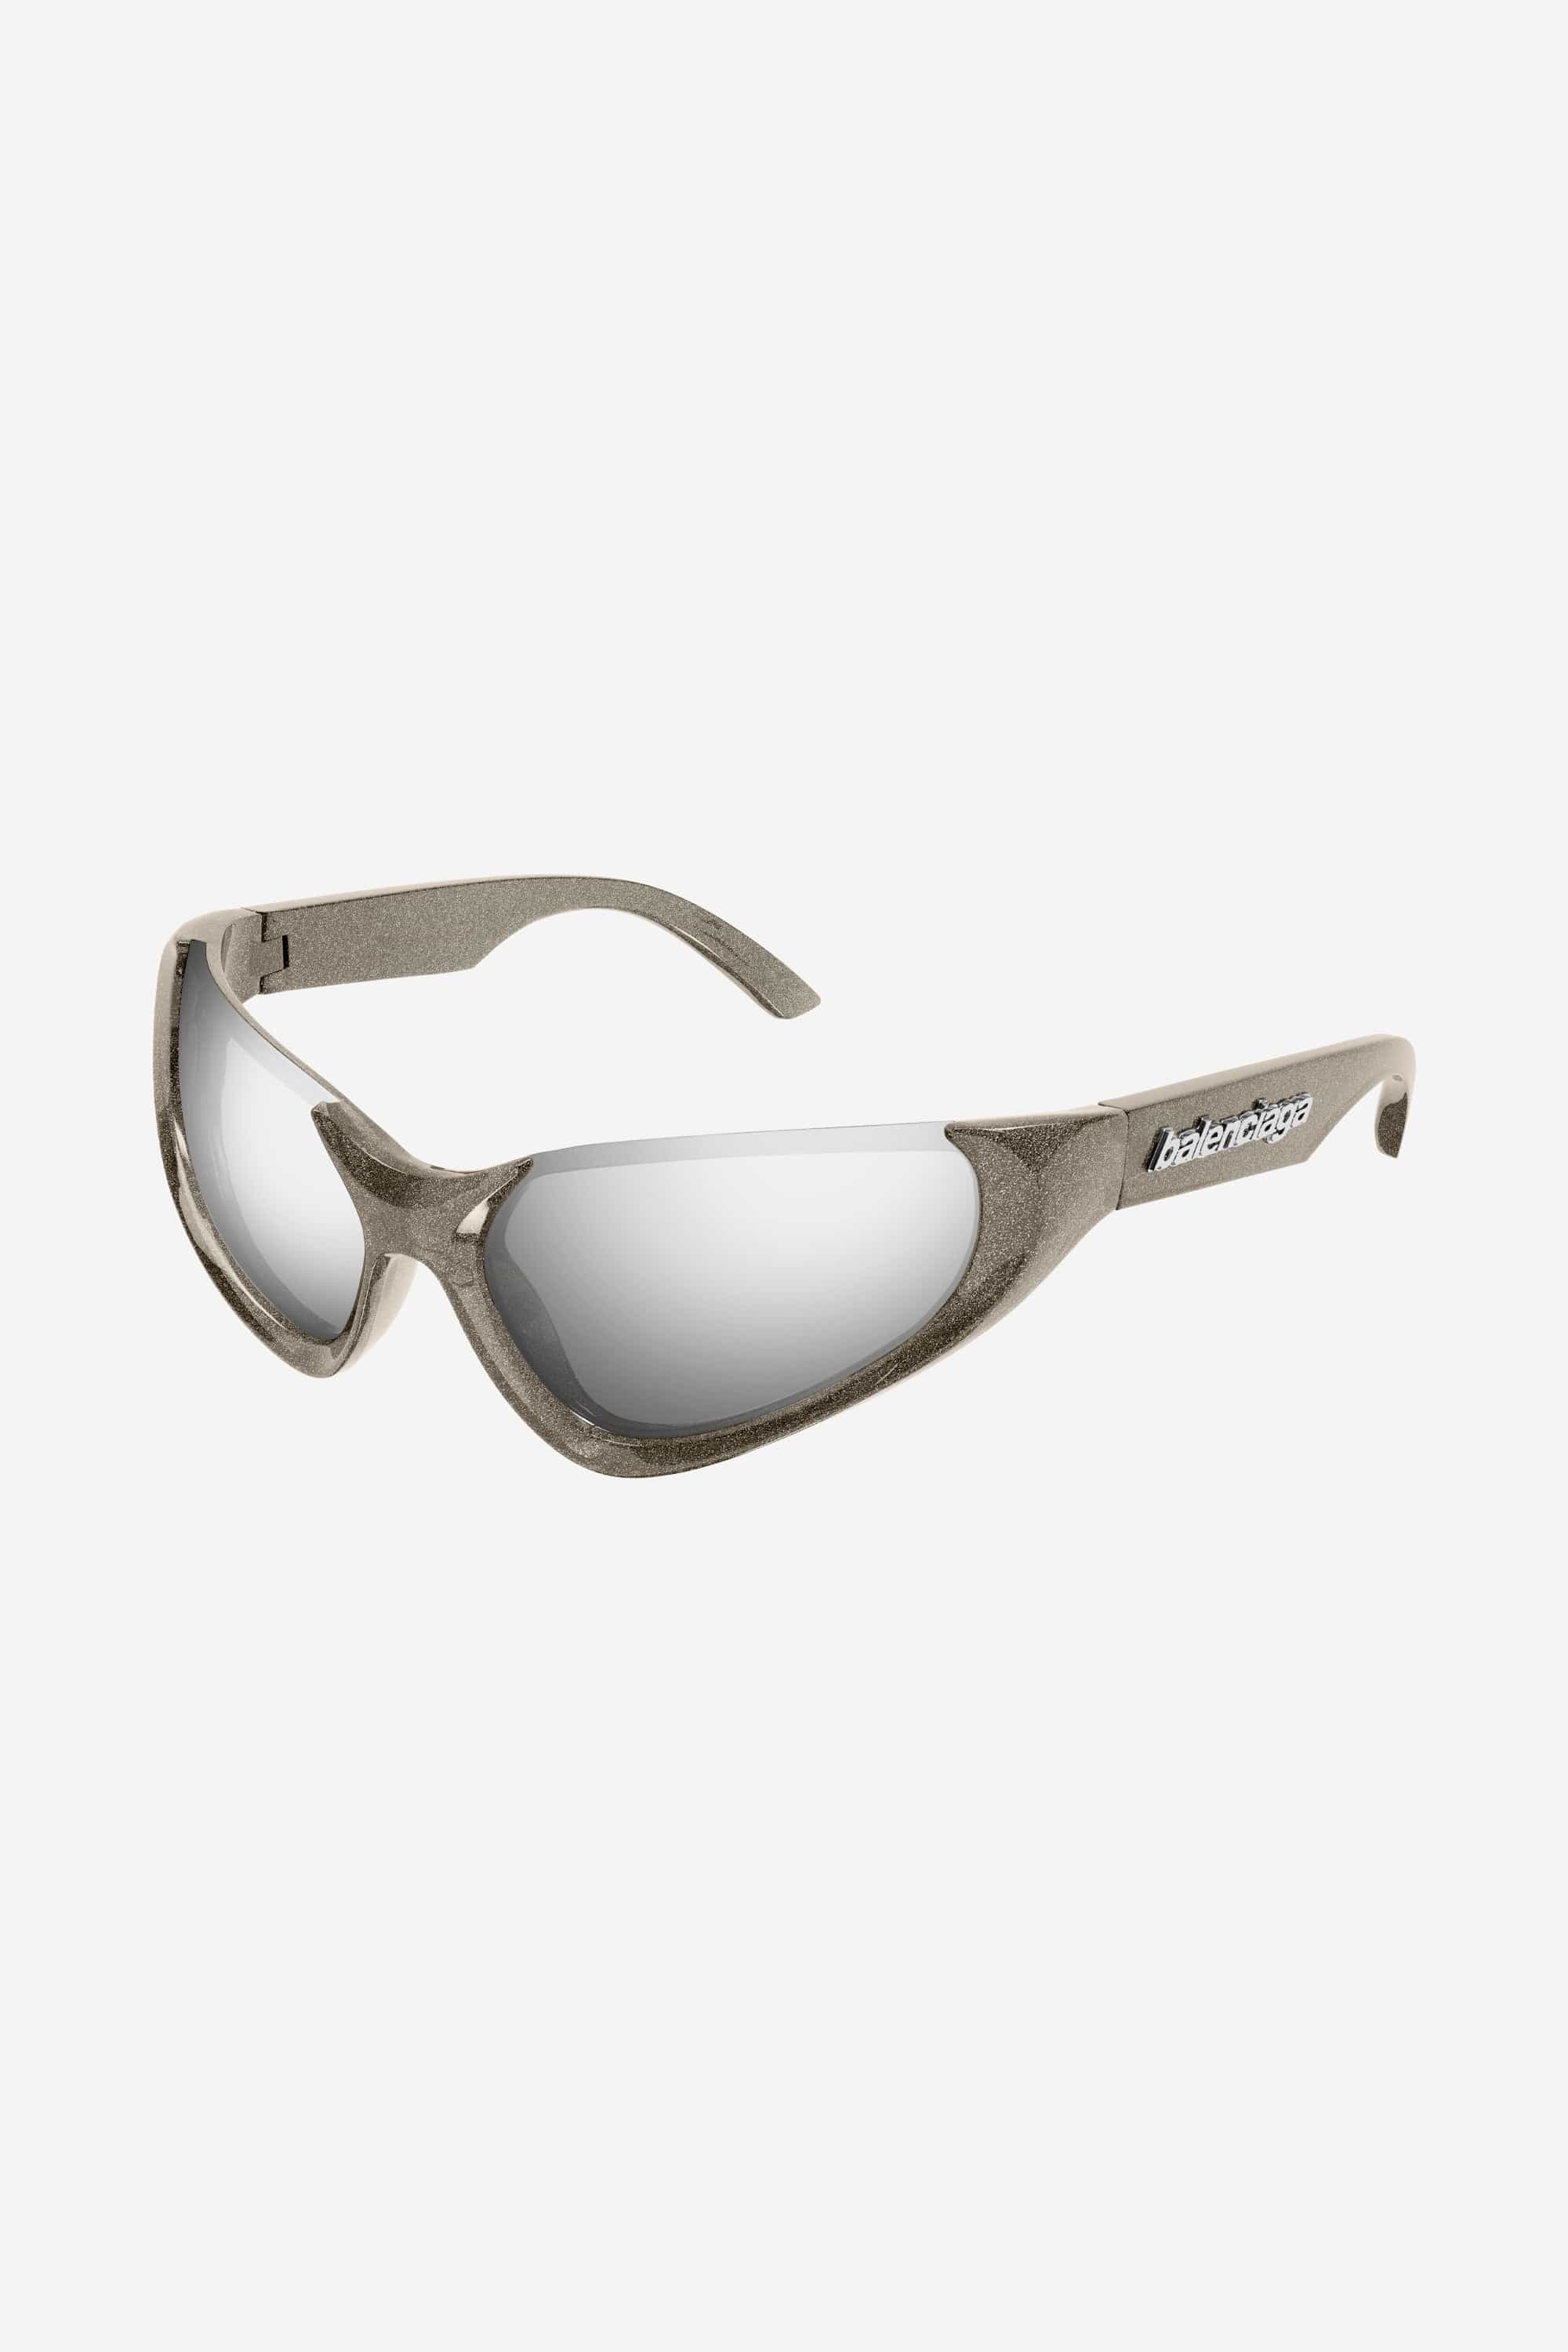 Balenciaga silver wrap around sunglasses - Eyewear Club